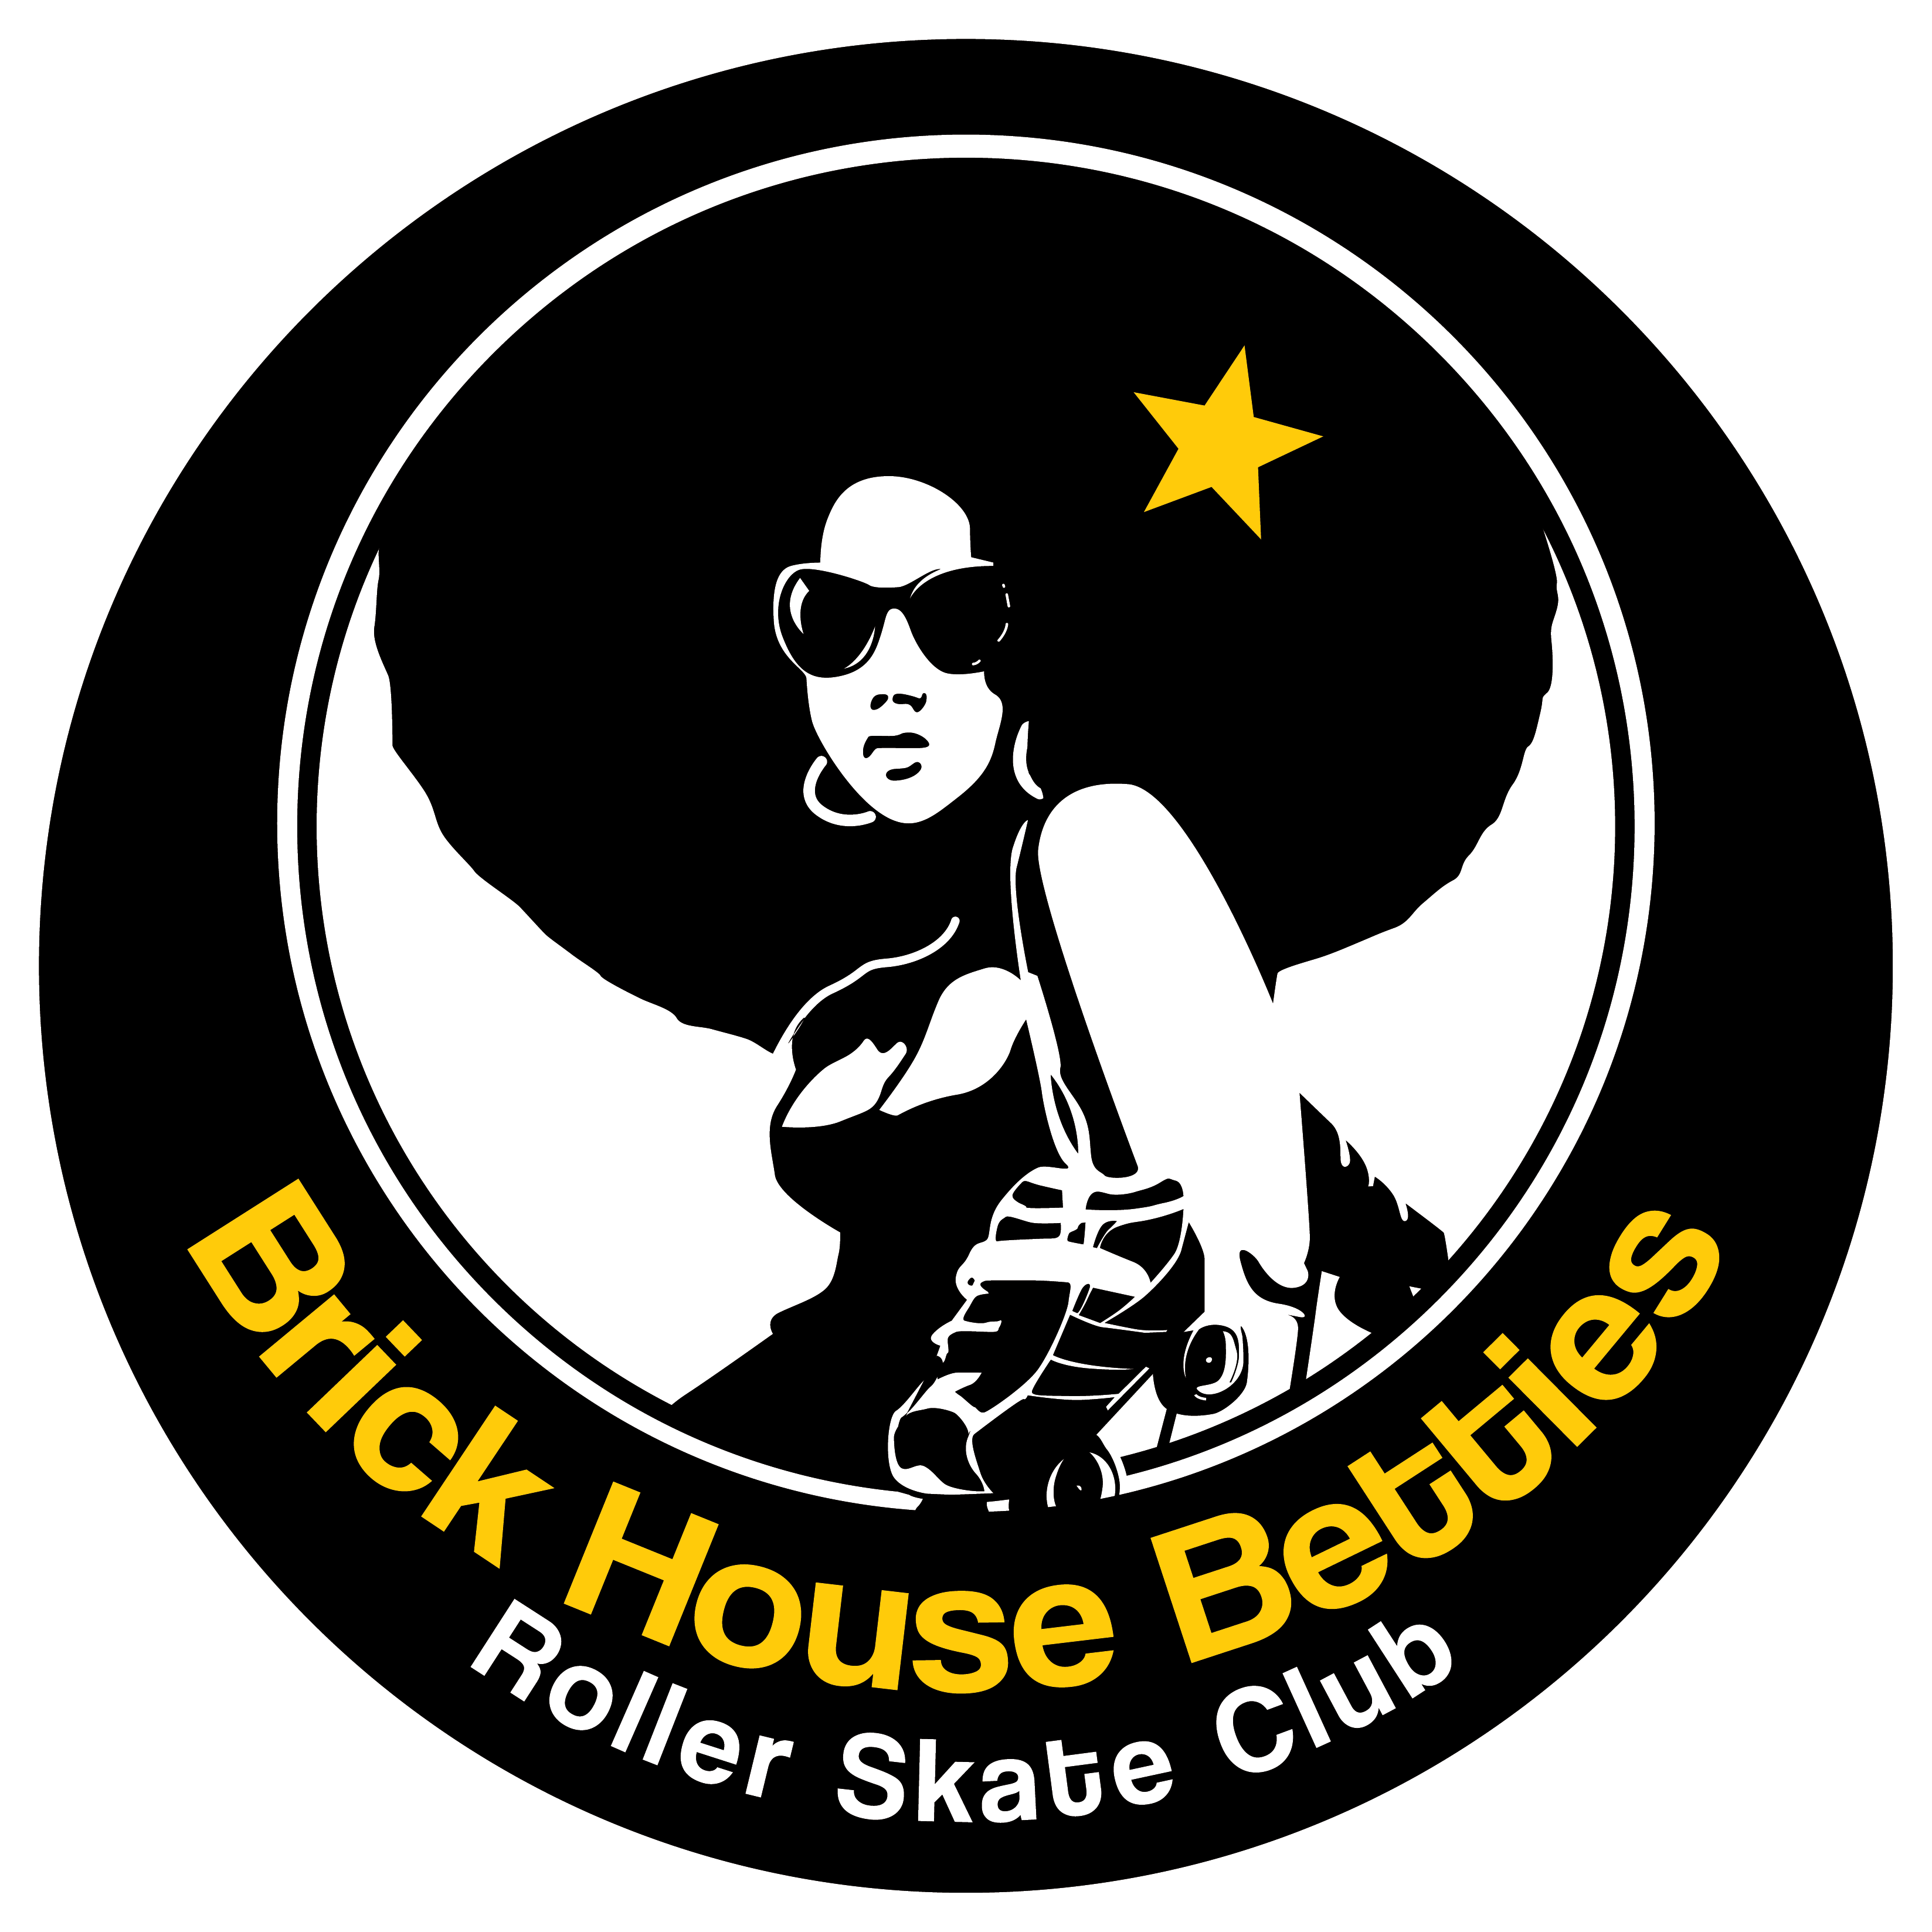 Brick House Betties Roller Skate Club